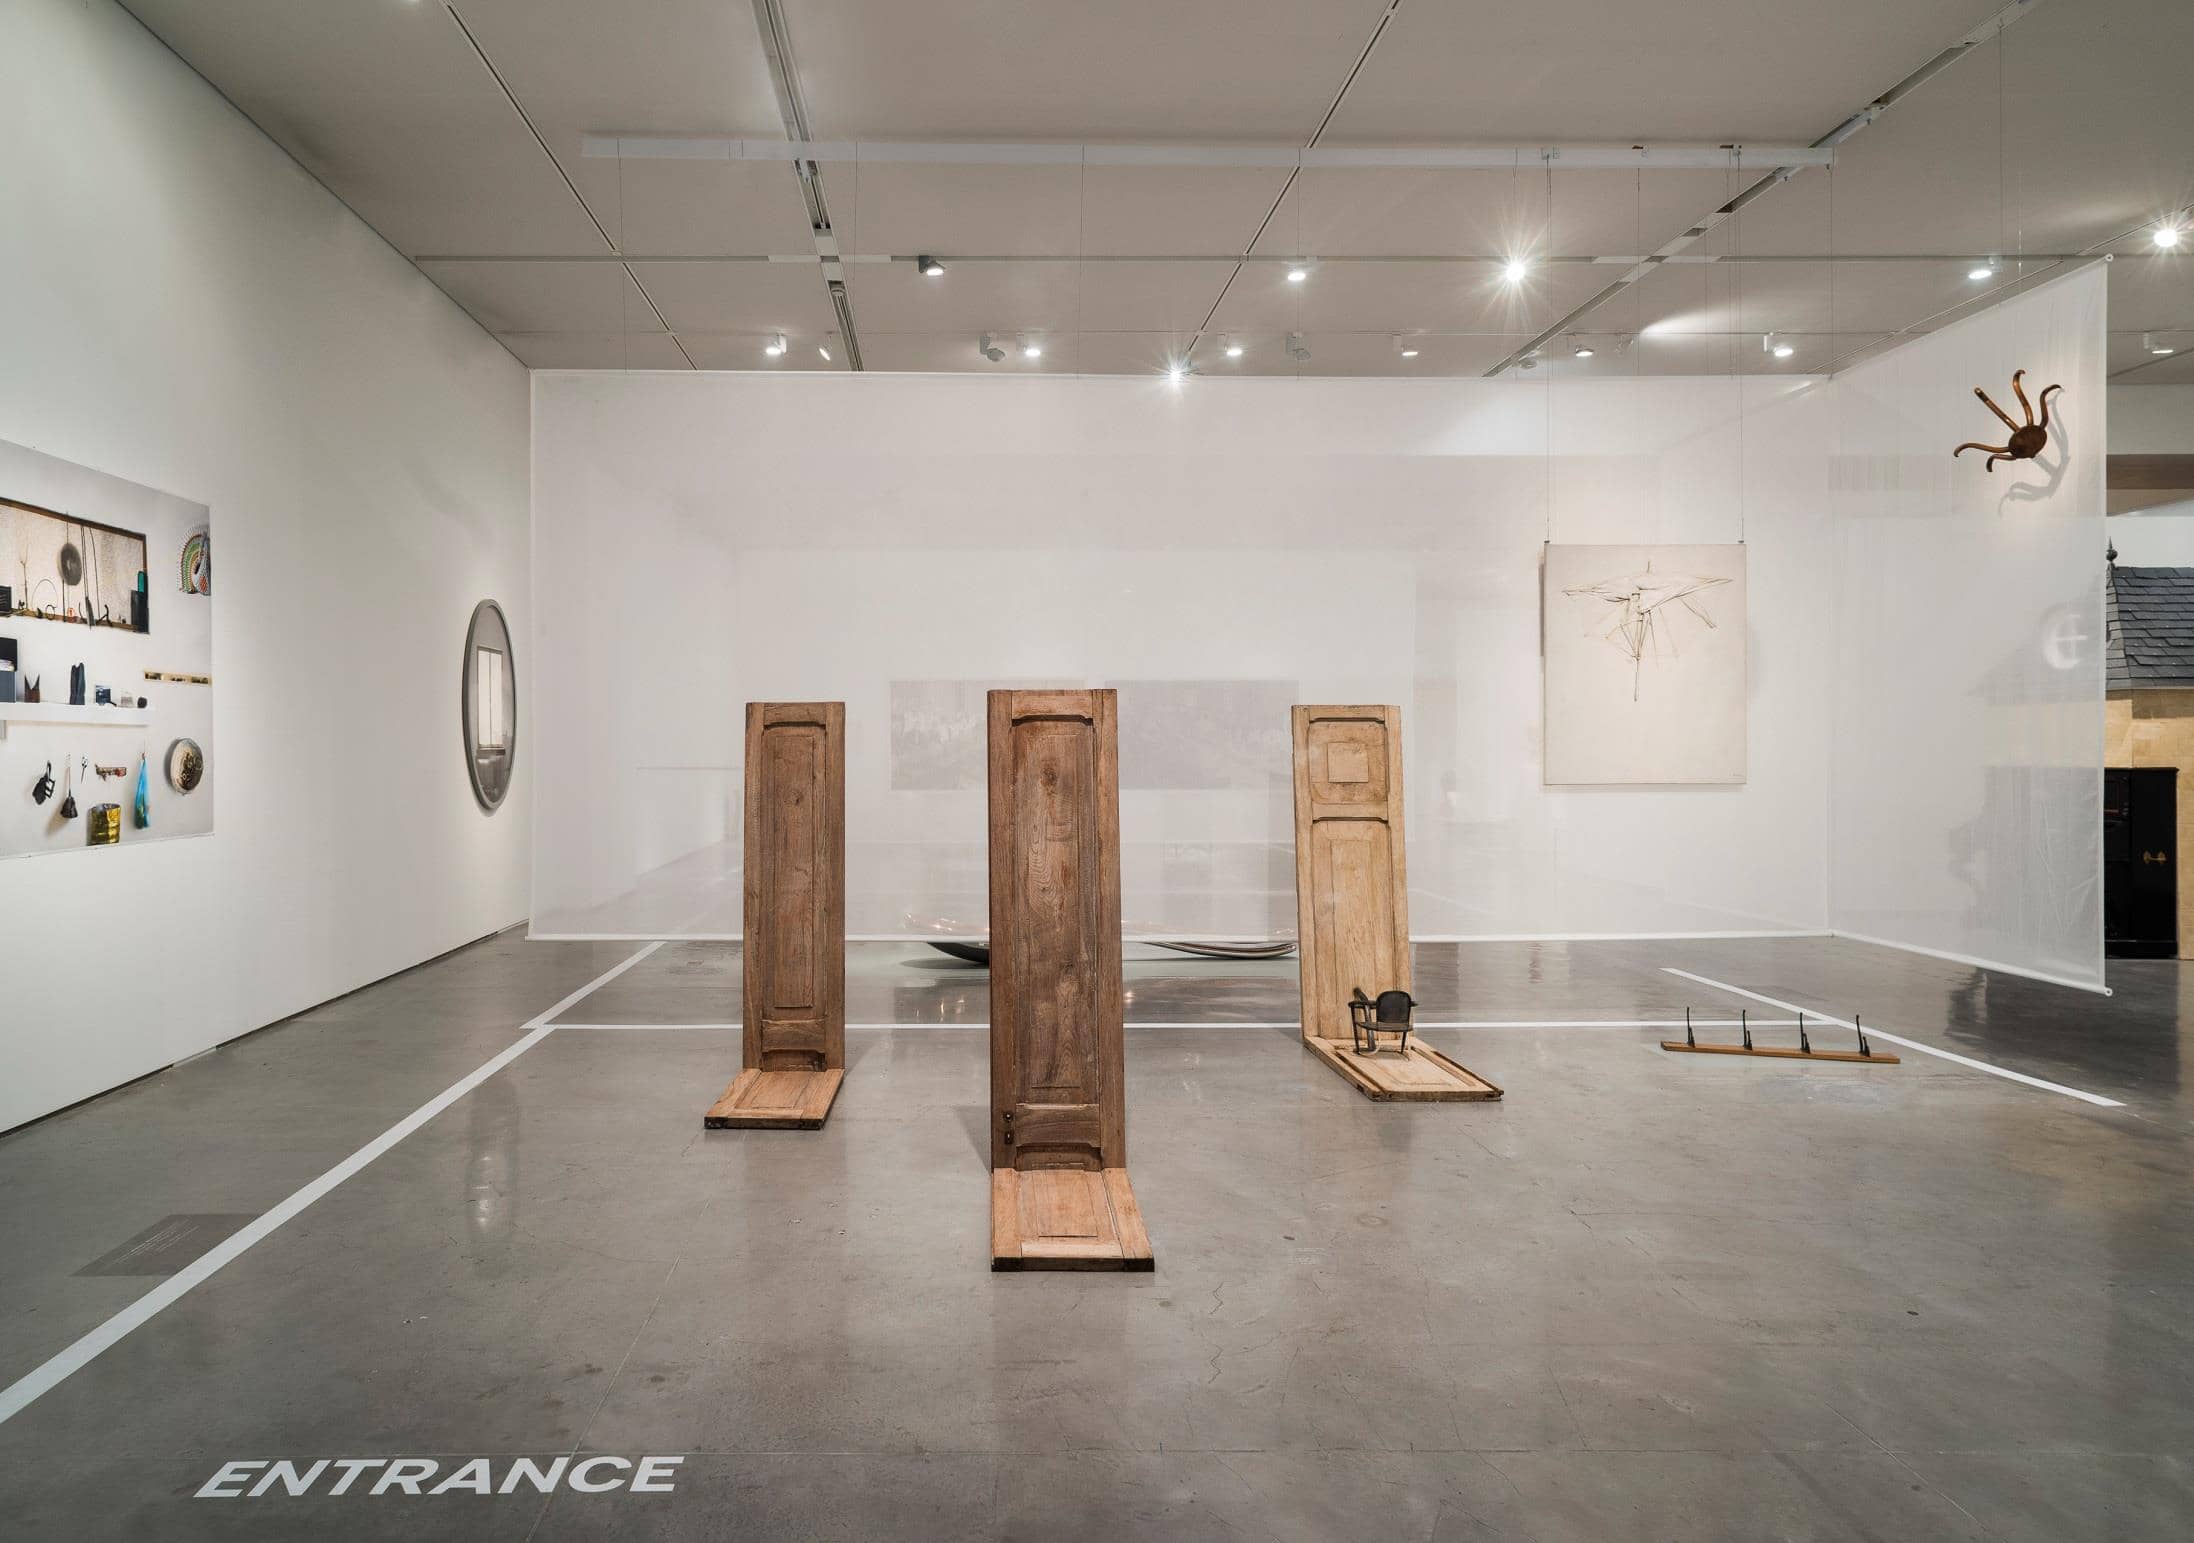 IKEA une-se ao Museu Berardo para exposição com obras de Duchamp, Man Ray, Andy Warhol ou Bourgeois